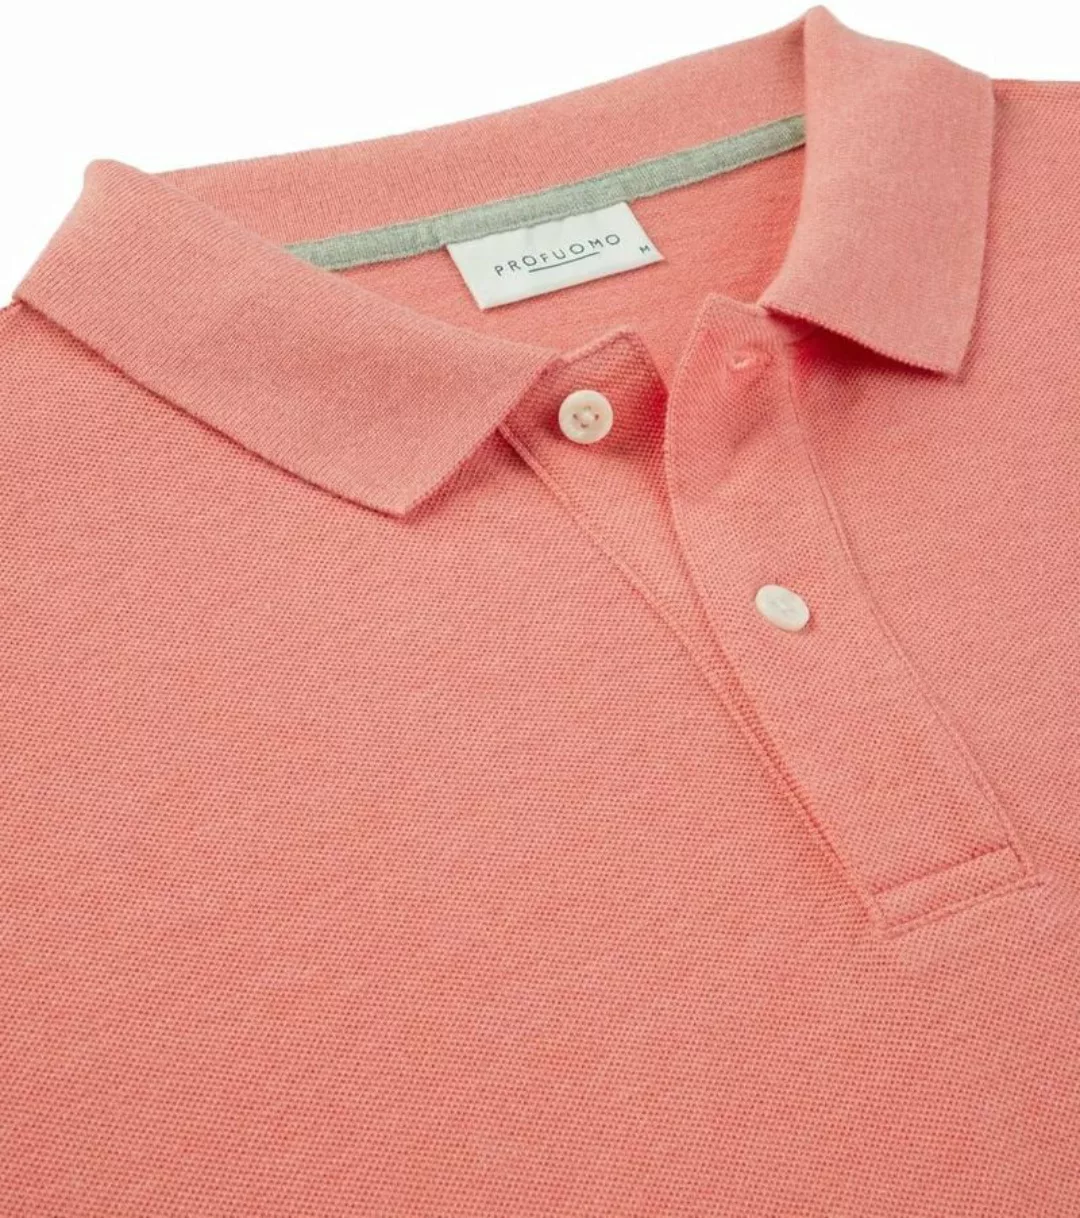 Profuomo Poloshirt Rosa Melange - Größe S günstig online kaufen